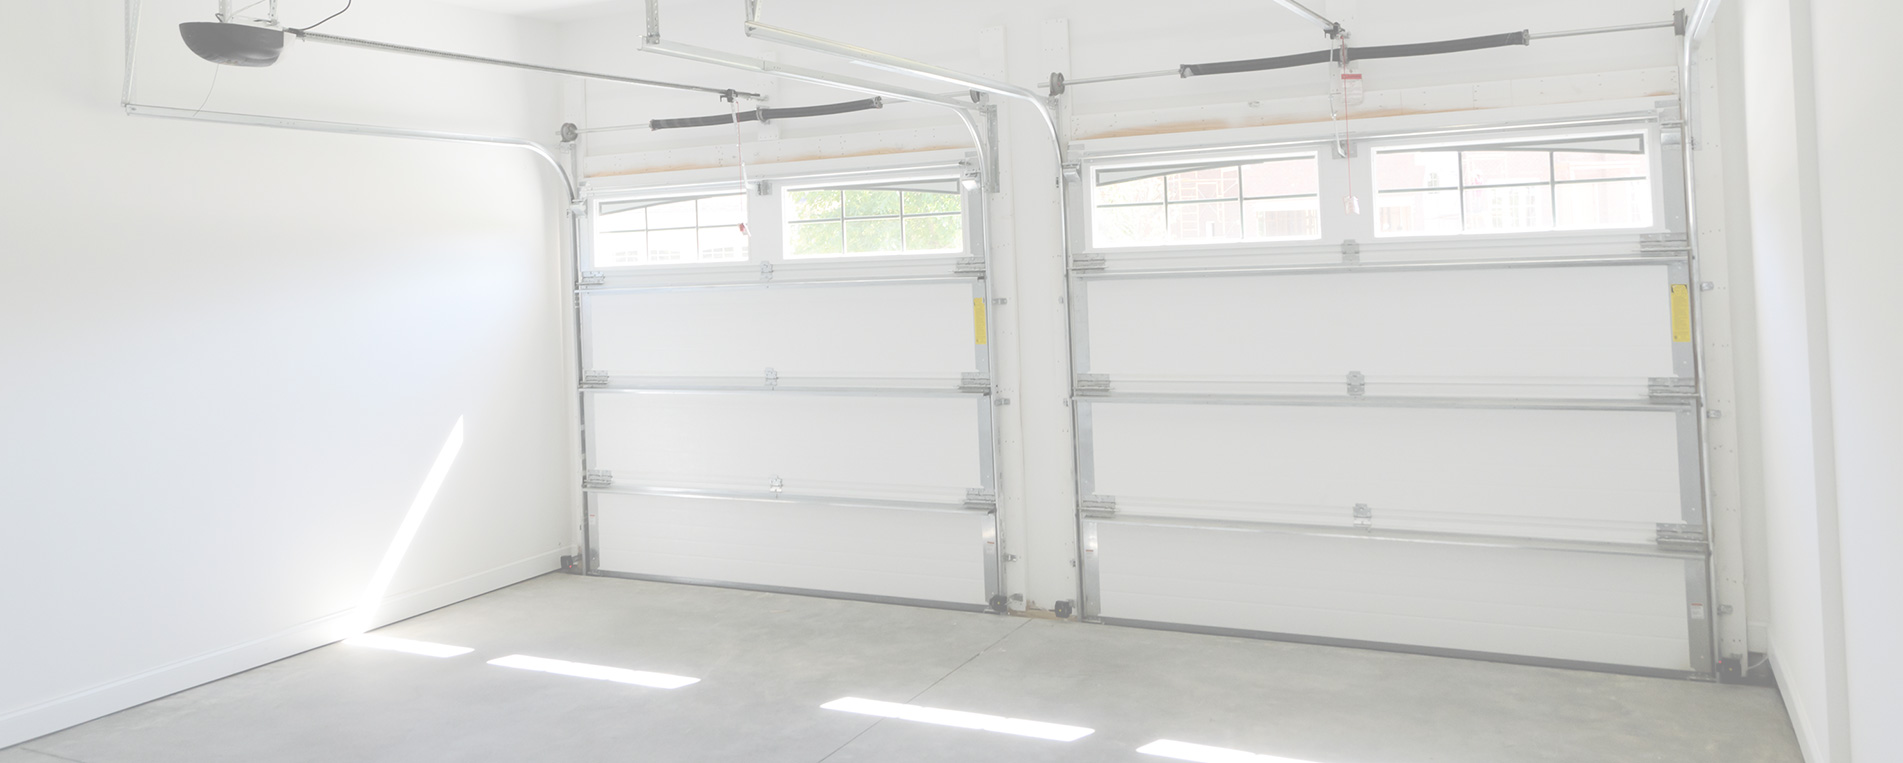 Garage Door Projects Completed